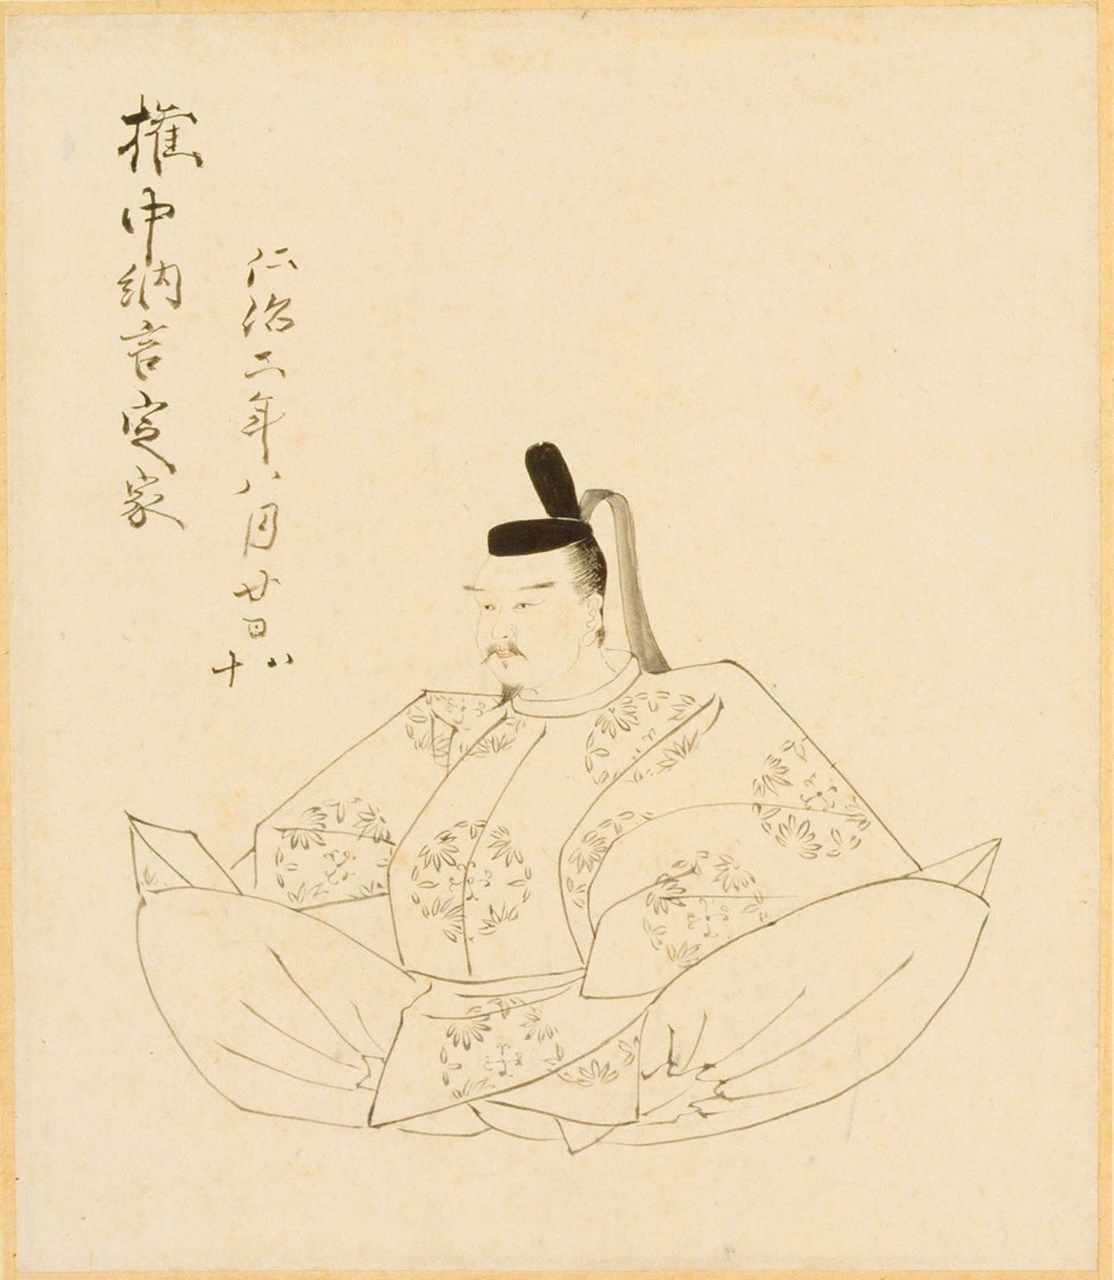 Retrato de Fujiwara no Teika (De la colección Shōzōshū, de Kurihara Nobumitsu, Archivo de la Biblioteca de la Dieta Nacional)